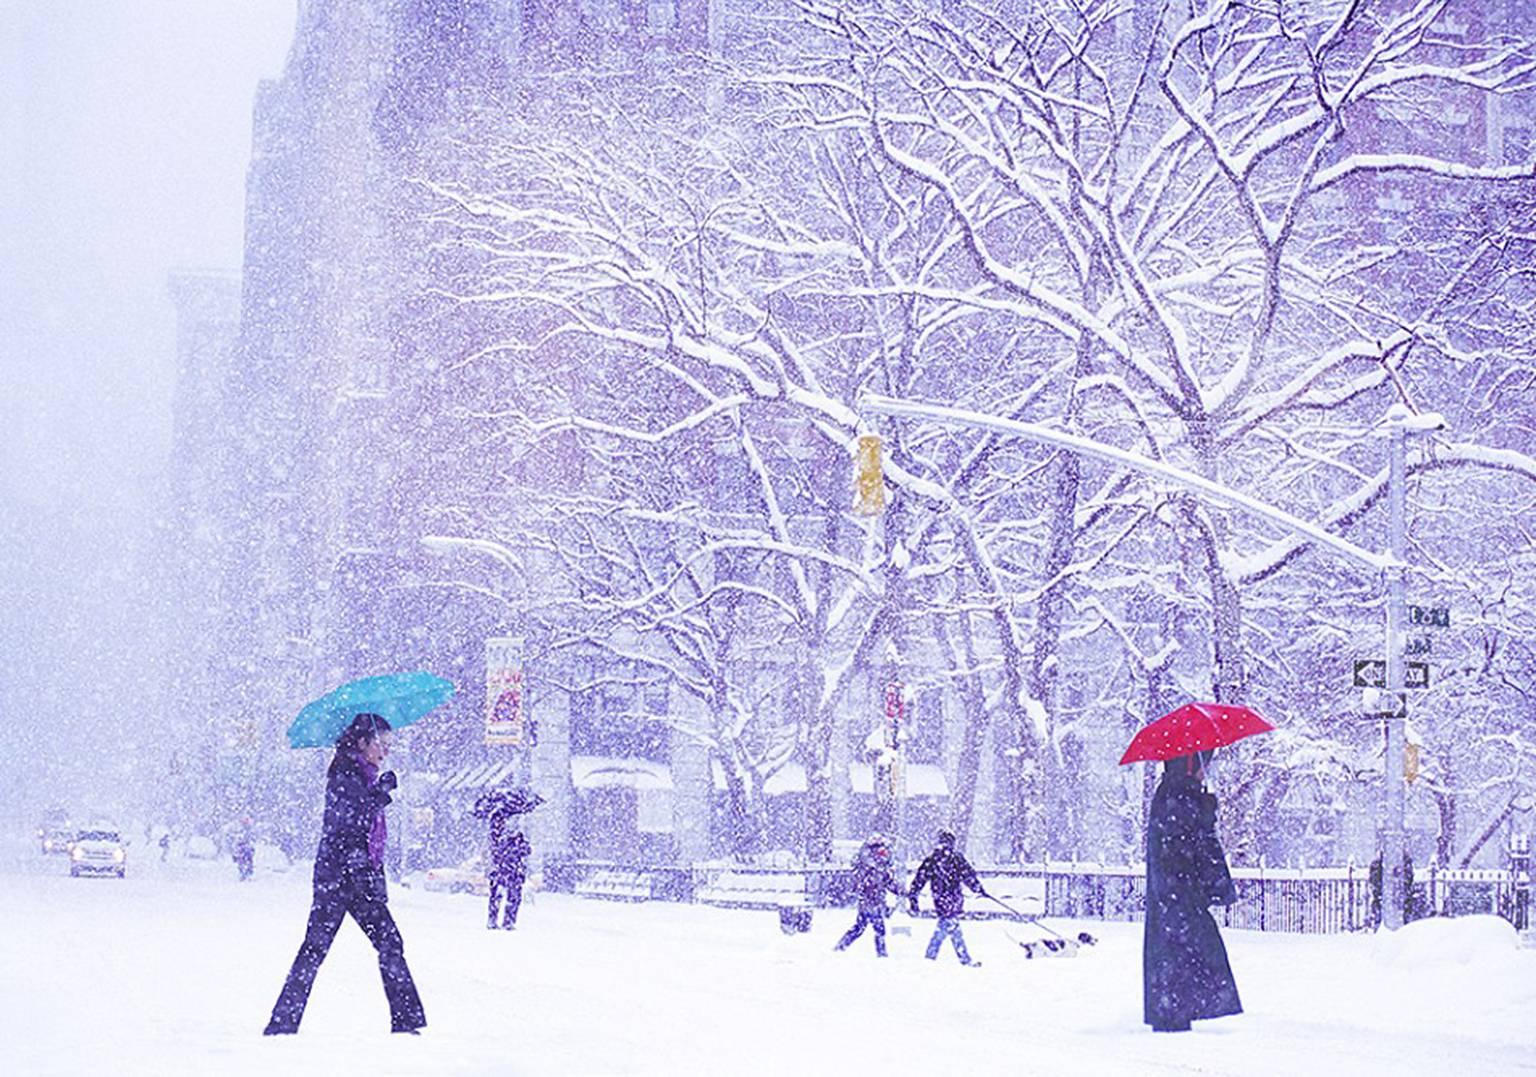 Color Photograph Mitchell Funk - Deux parapluies dans la tempête de neige à New York